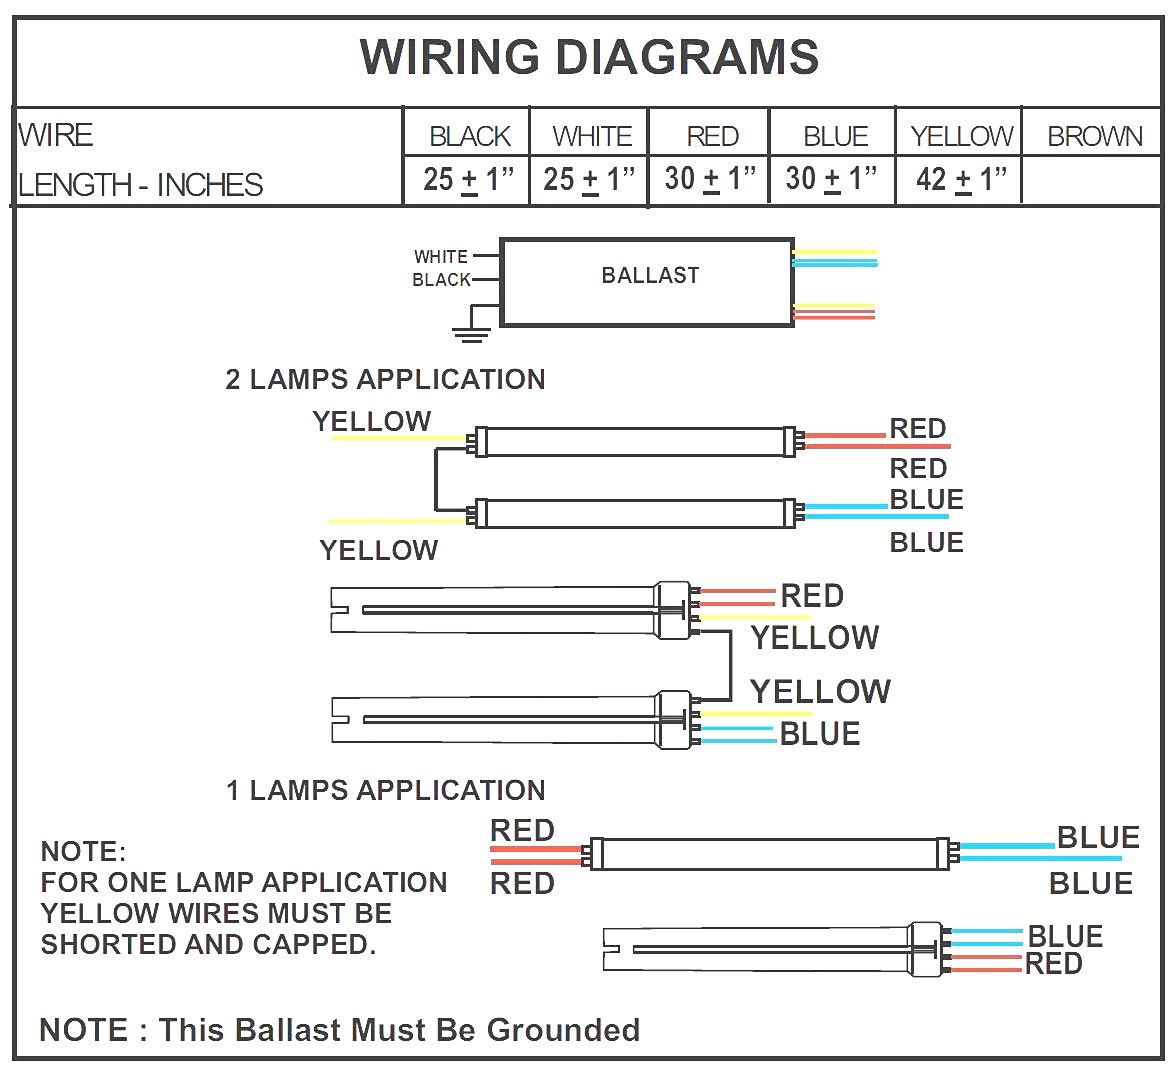 ballast diagram wiring workhorse wh2 277c wiring diagram post ballast diagram wiring workhorse wh2 277c